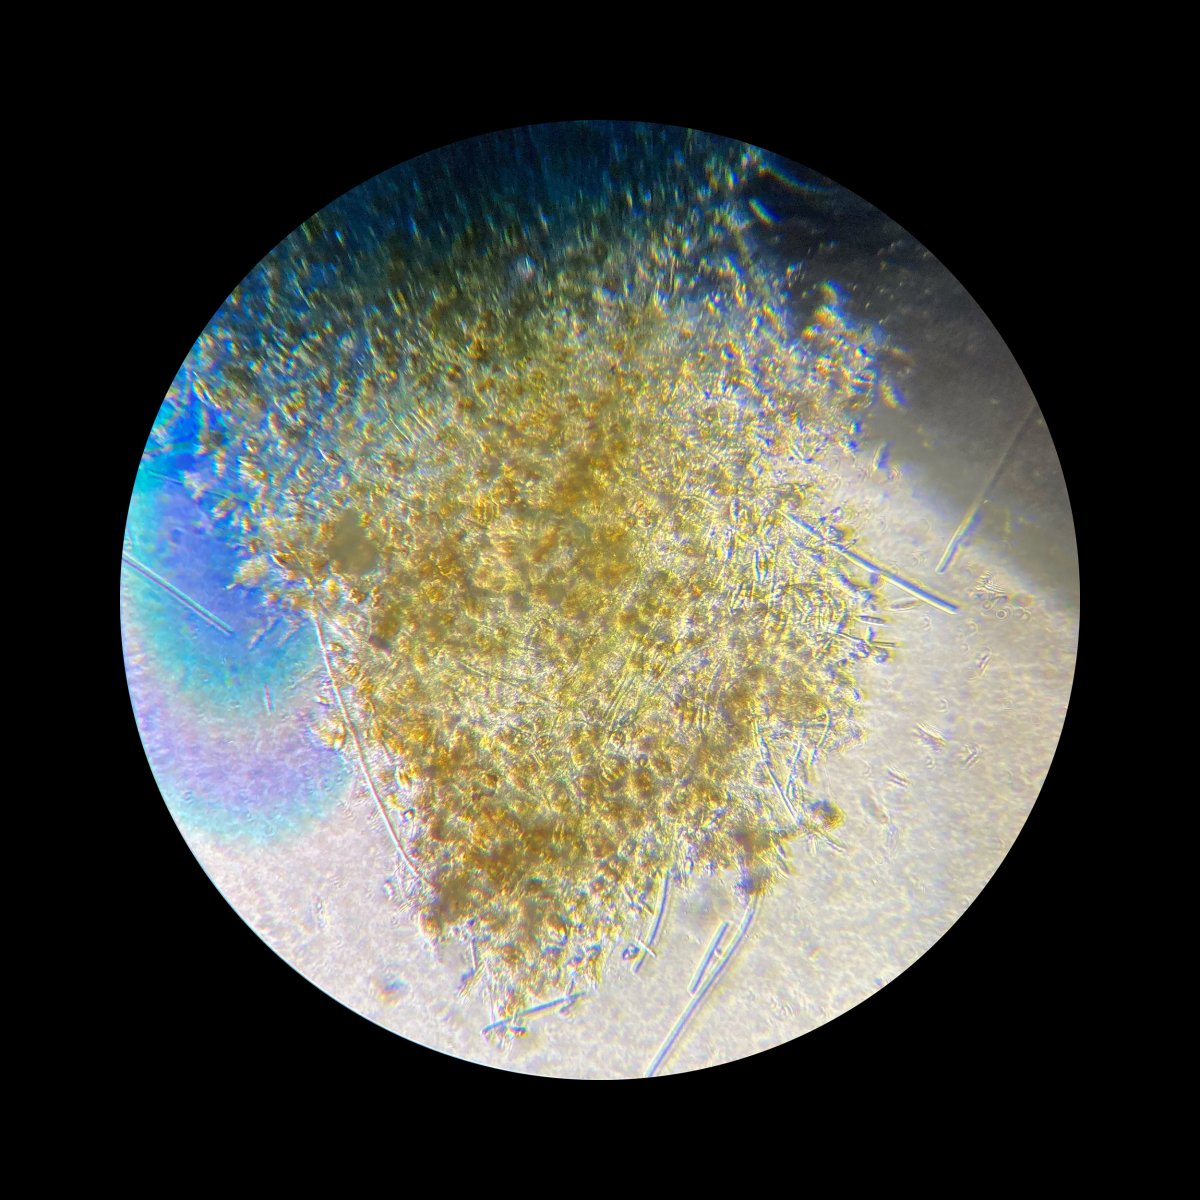 26-I-22-microscopy-IV.jpg